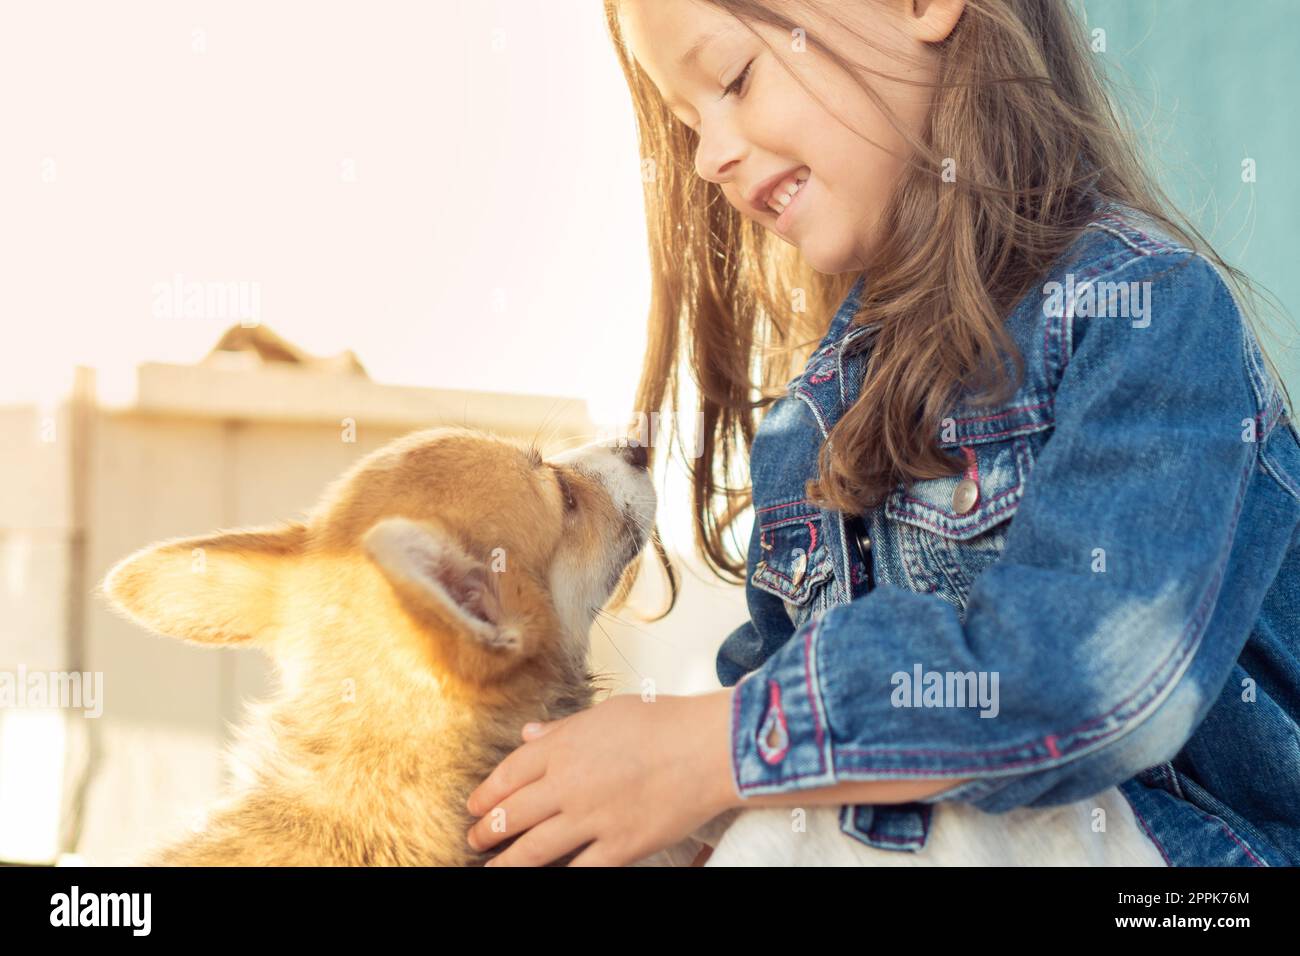 Vue de côté d'une petite fille souriante avec de longs cheveux foncés portant une veste en denim, regardant le merveilleux corgi welsh pembroke. Banque D'Images